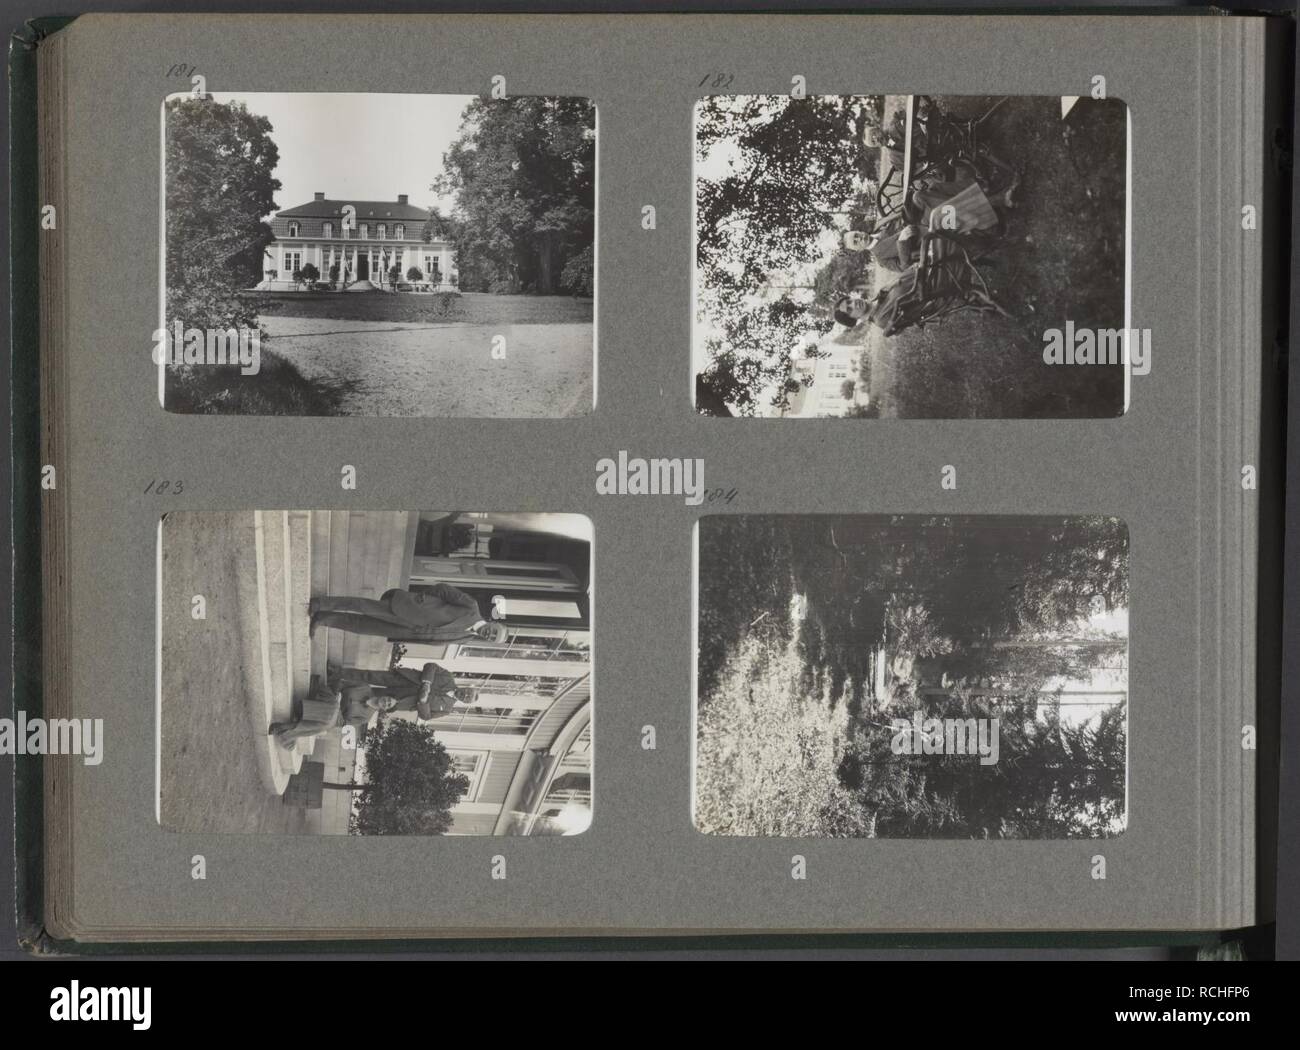 Albumblad met vier fotos. Linksboven groot huis, mogelijk de Nederlandse resid, Bestanddeelnr 21 24. Stock Photo